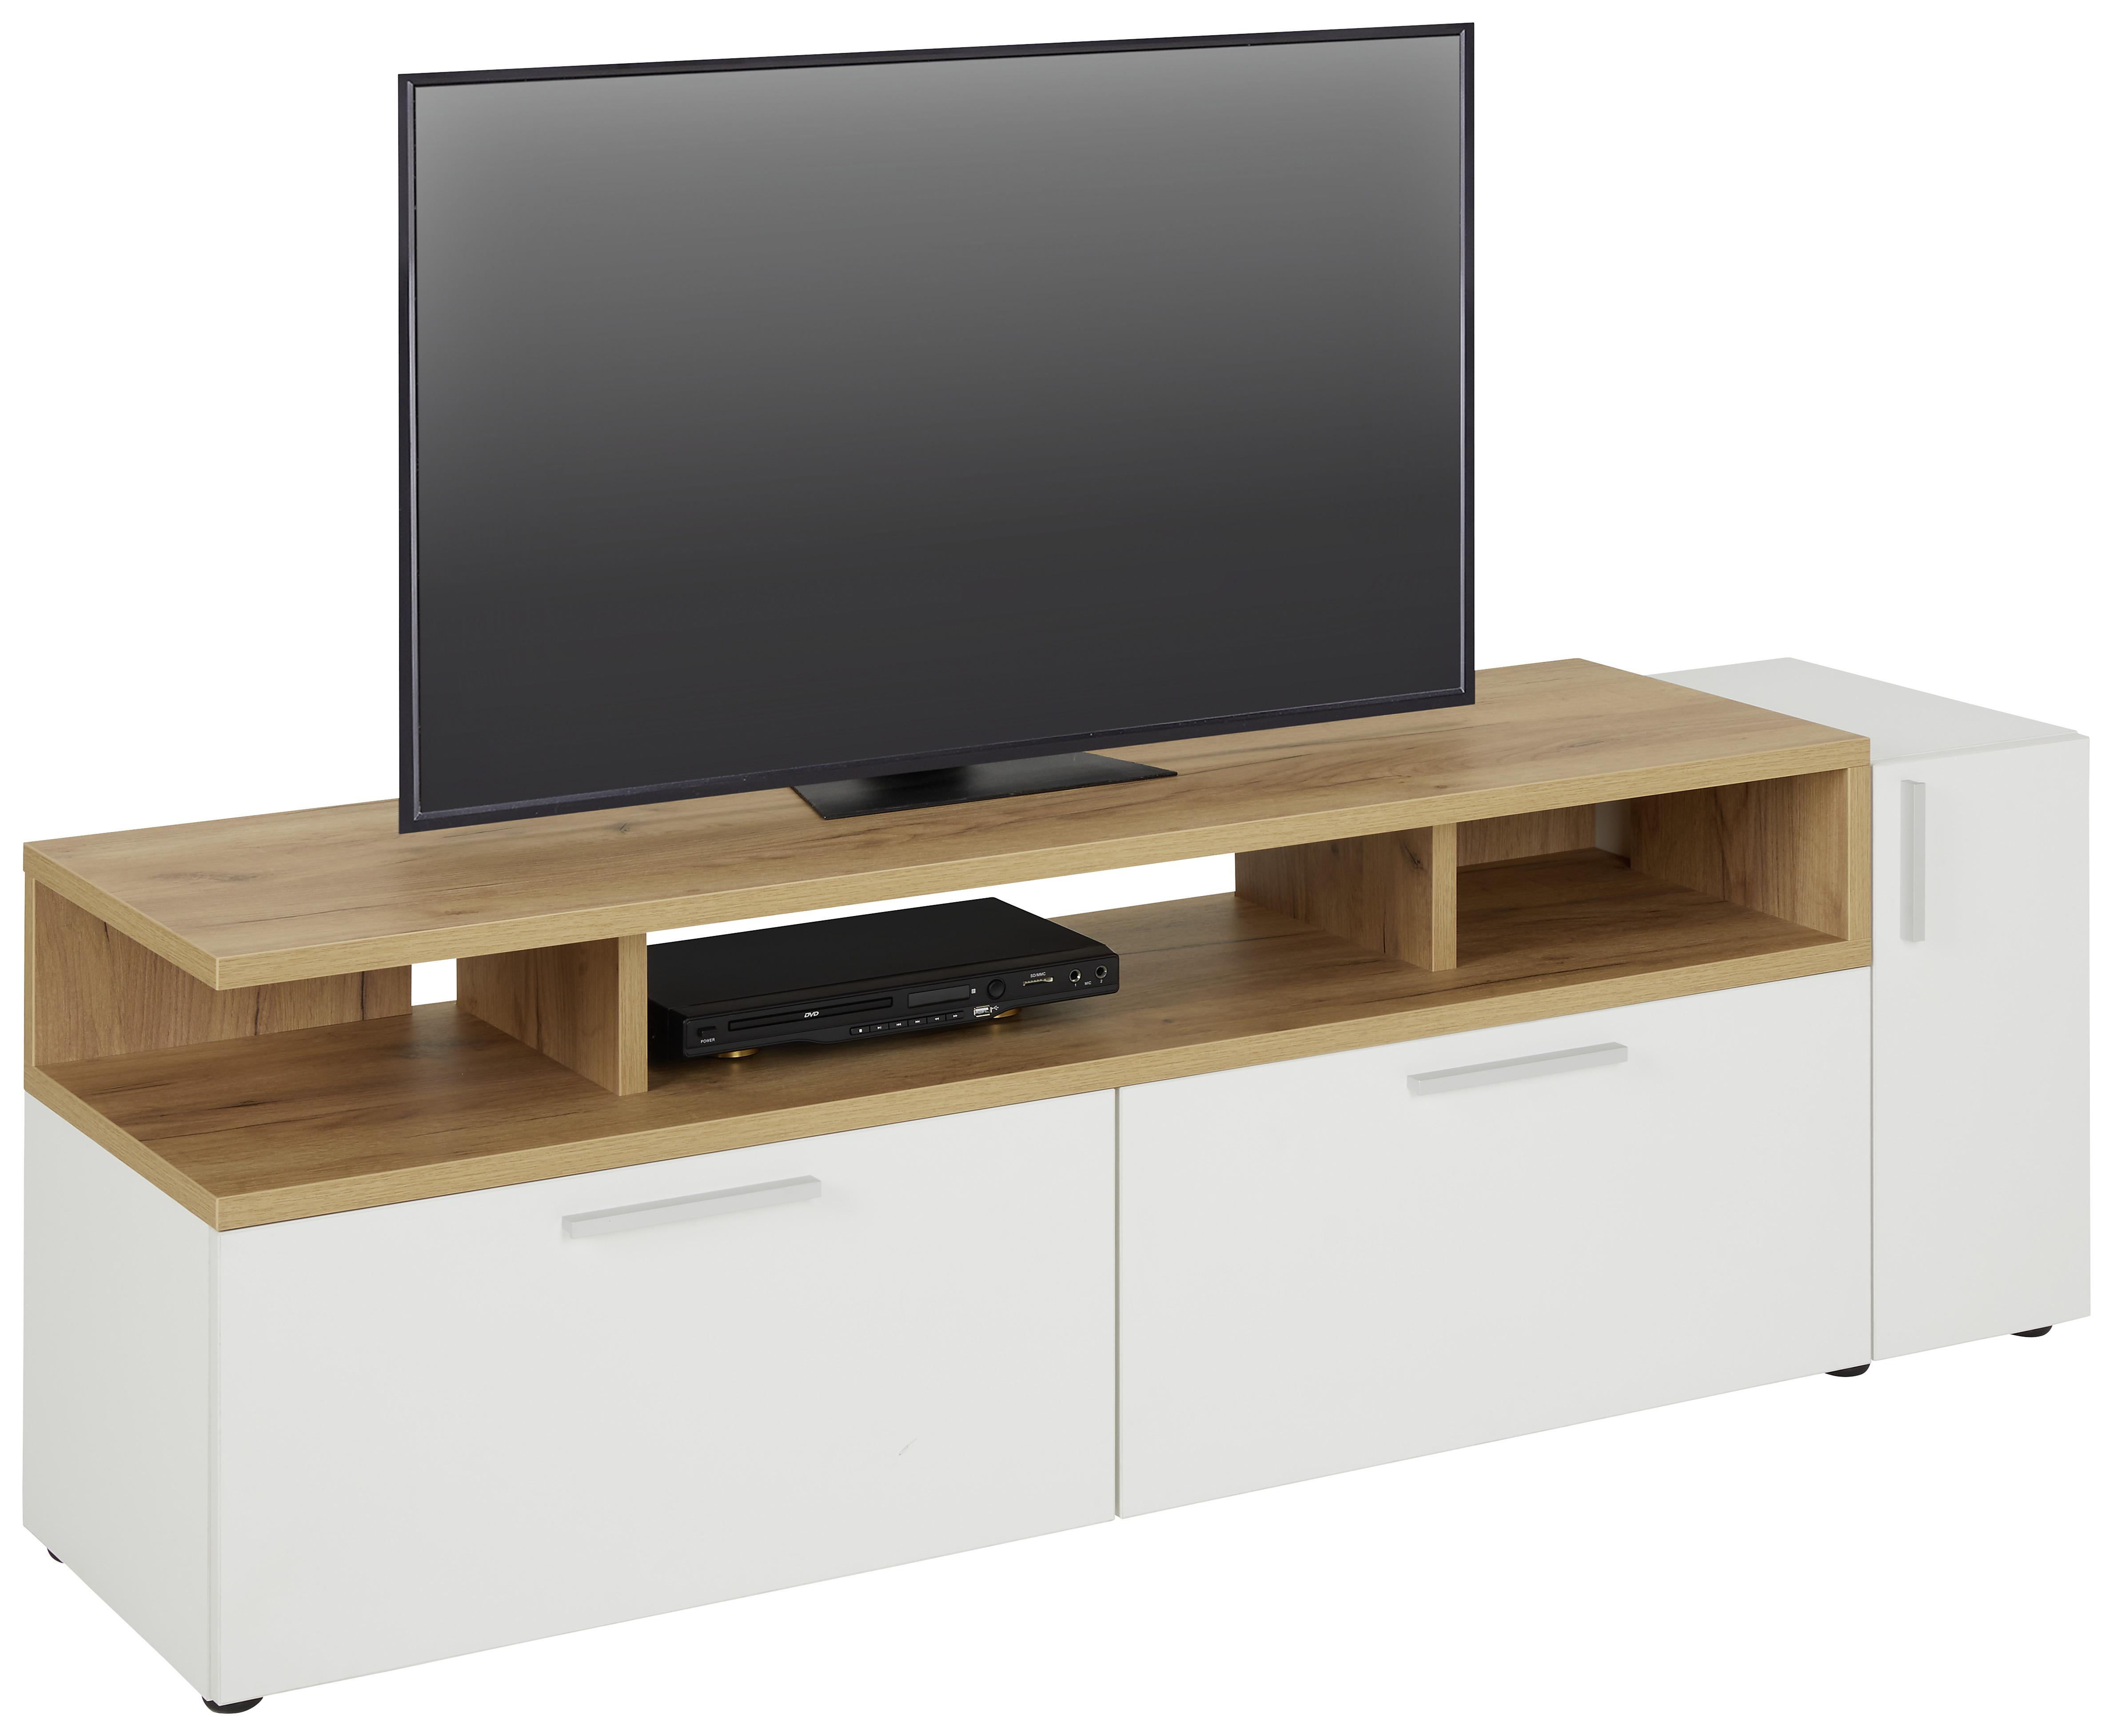 TV-Element in Weiß/Eichefarben - Eichefarben/Alufarben, MODERN, Holzwerkstoff/Kunststoff (160/53/40cm) - Modern Living